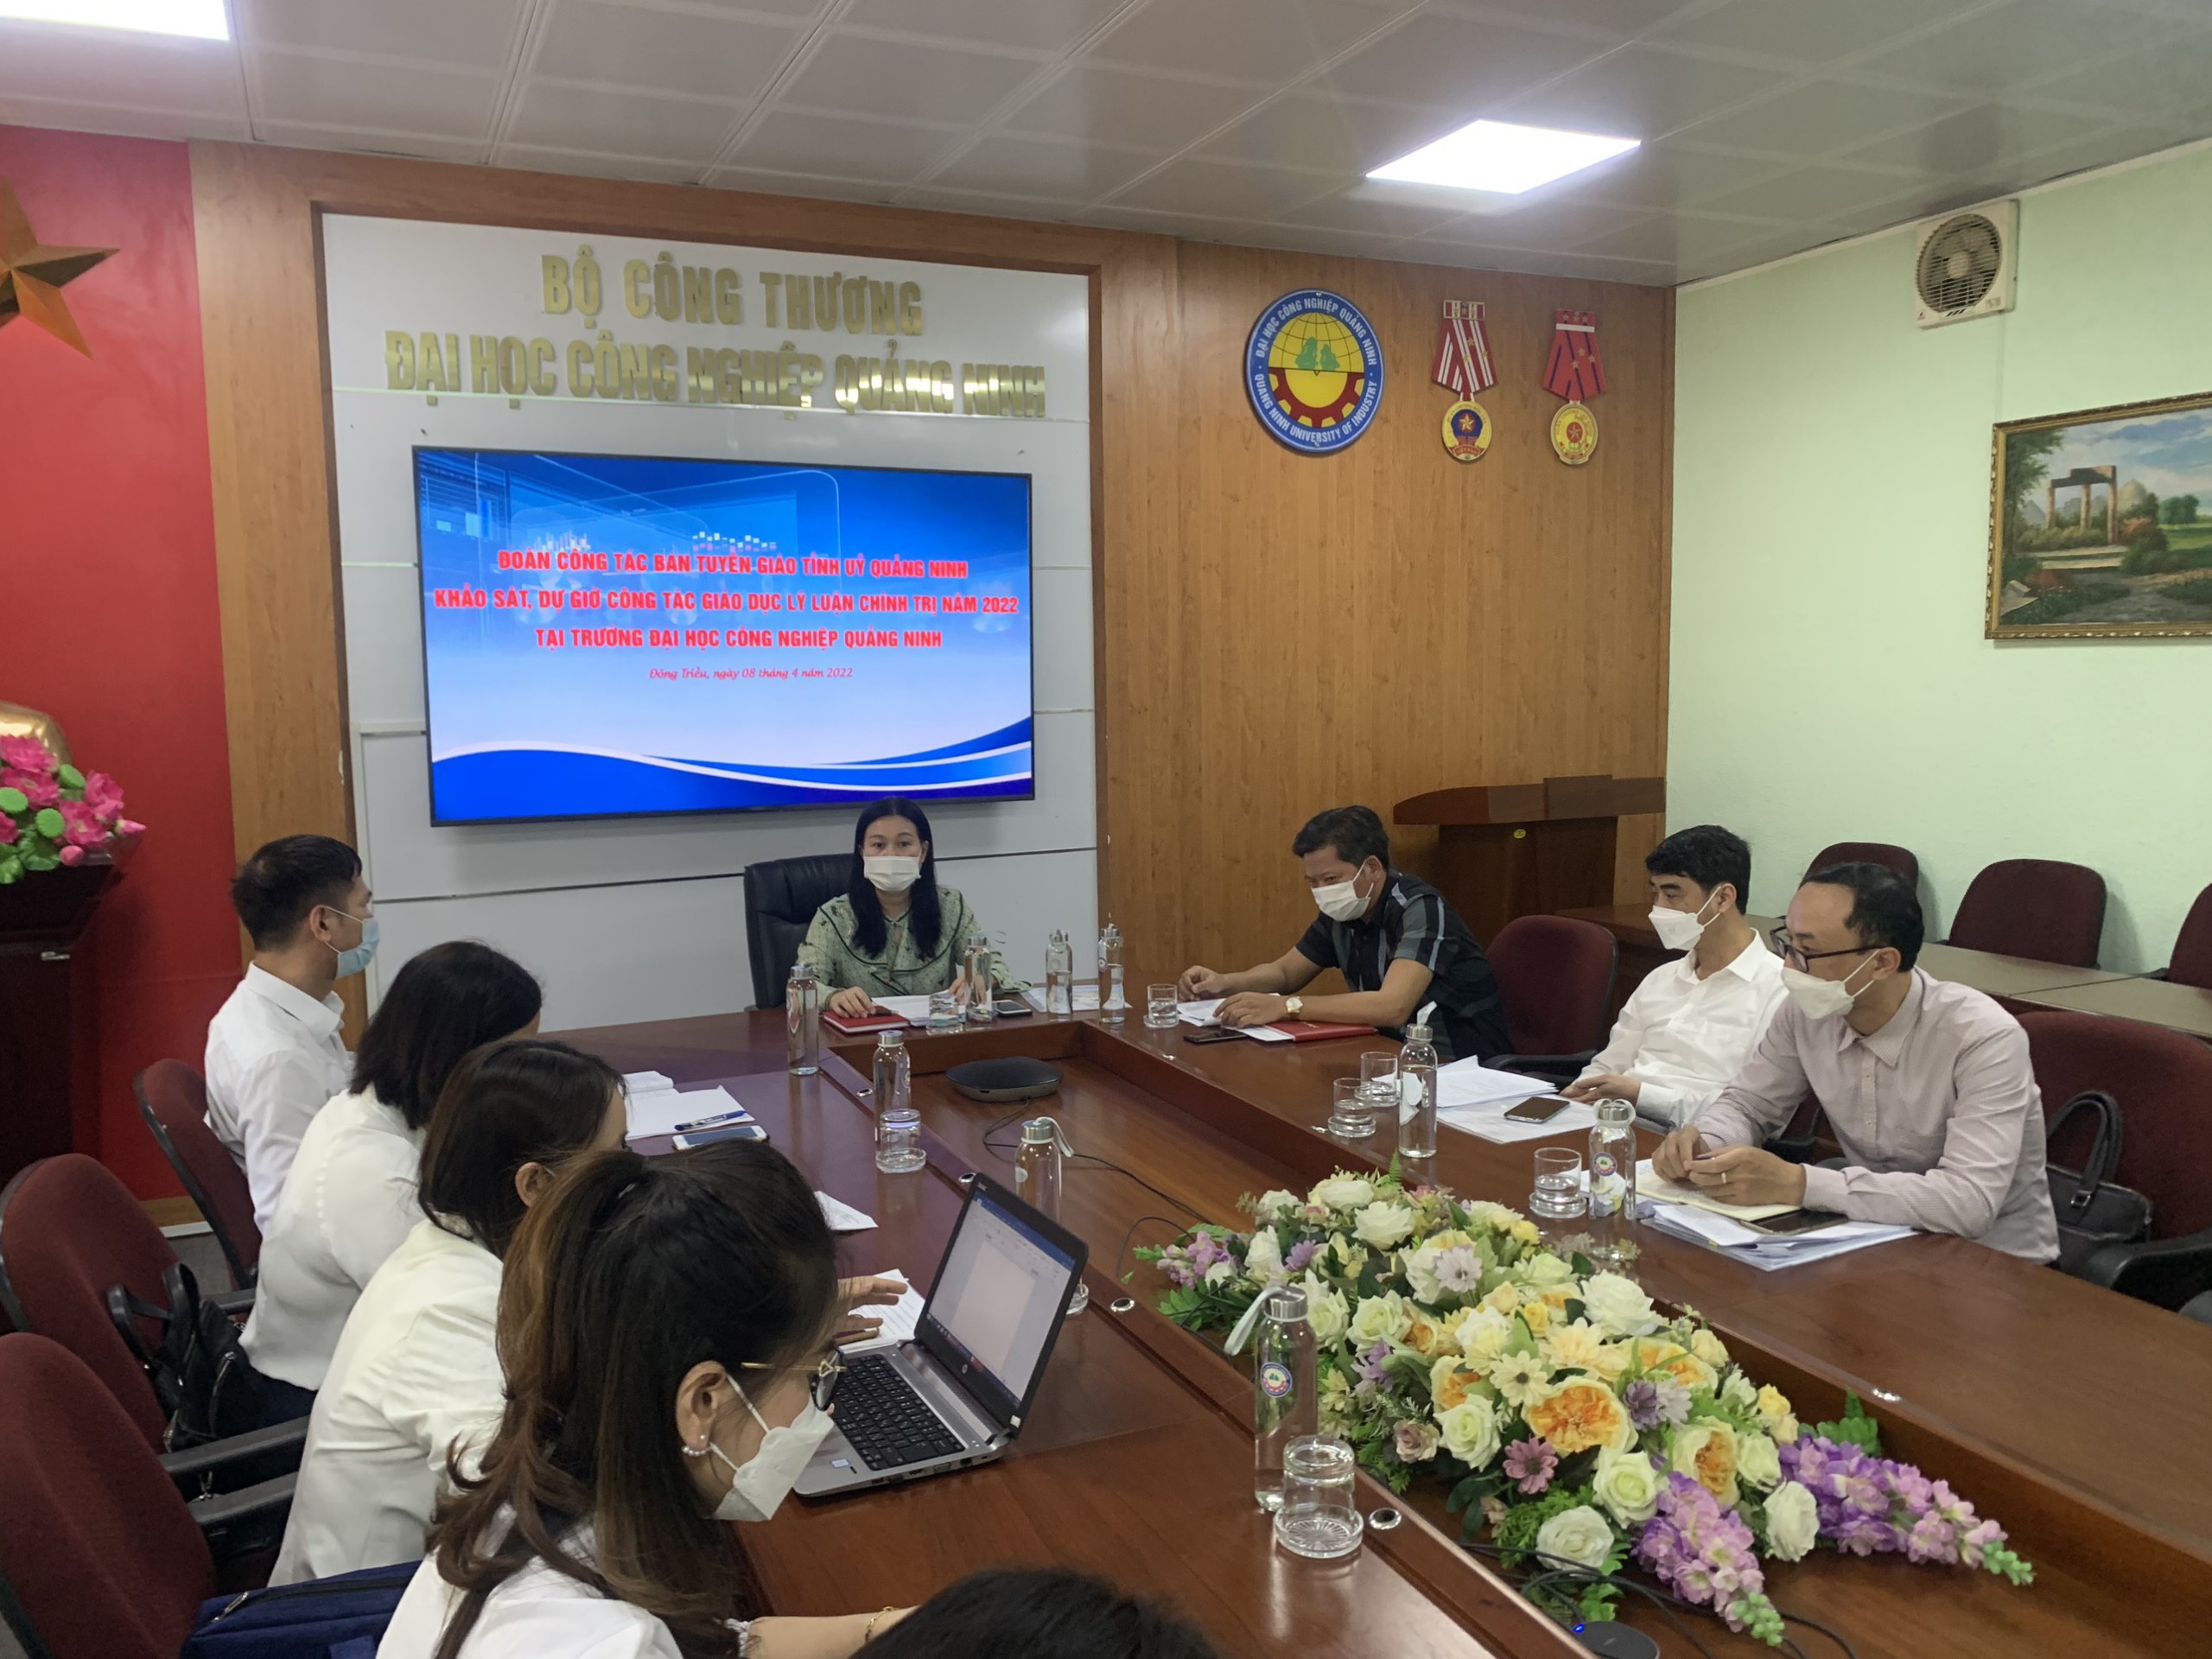 Khảo sát công tác giáo dục lý luận chính trị tại trường Đại học Công nghiệp Quảng Ninh